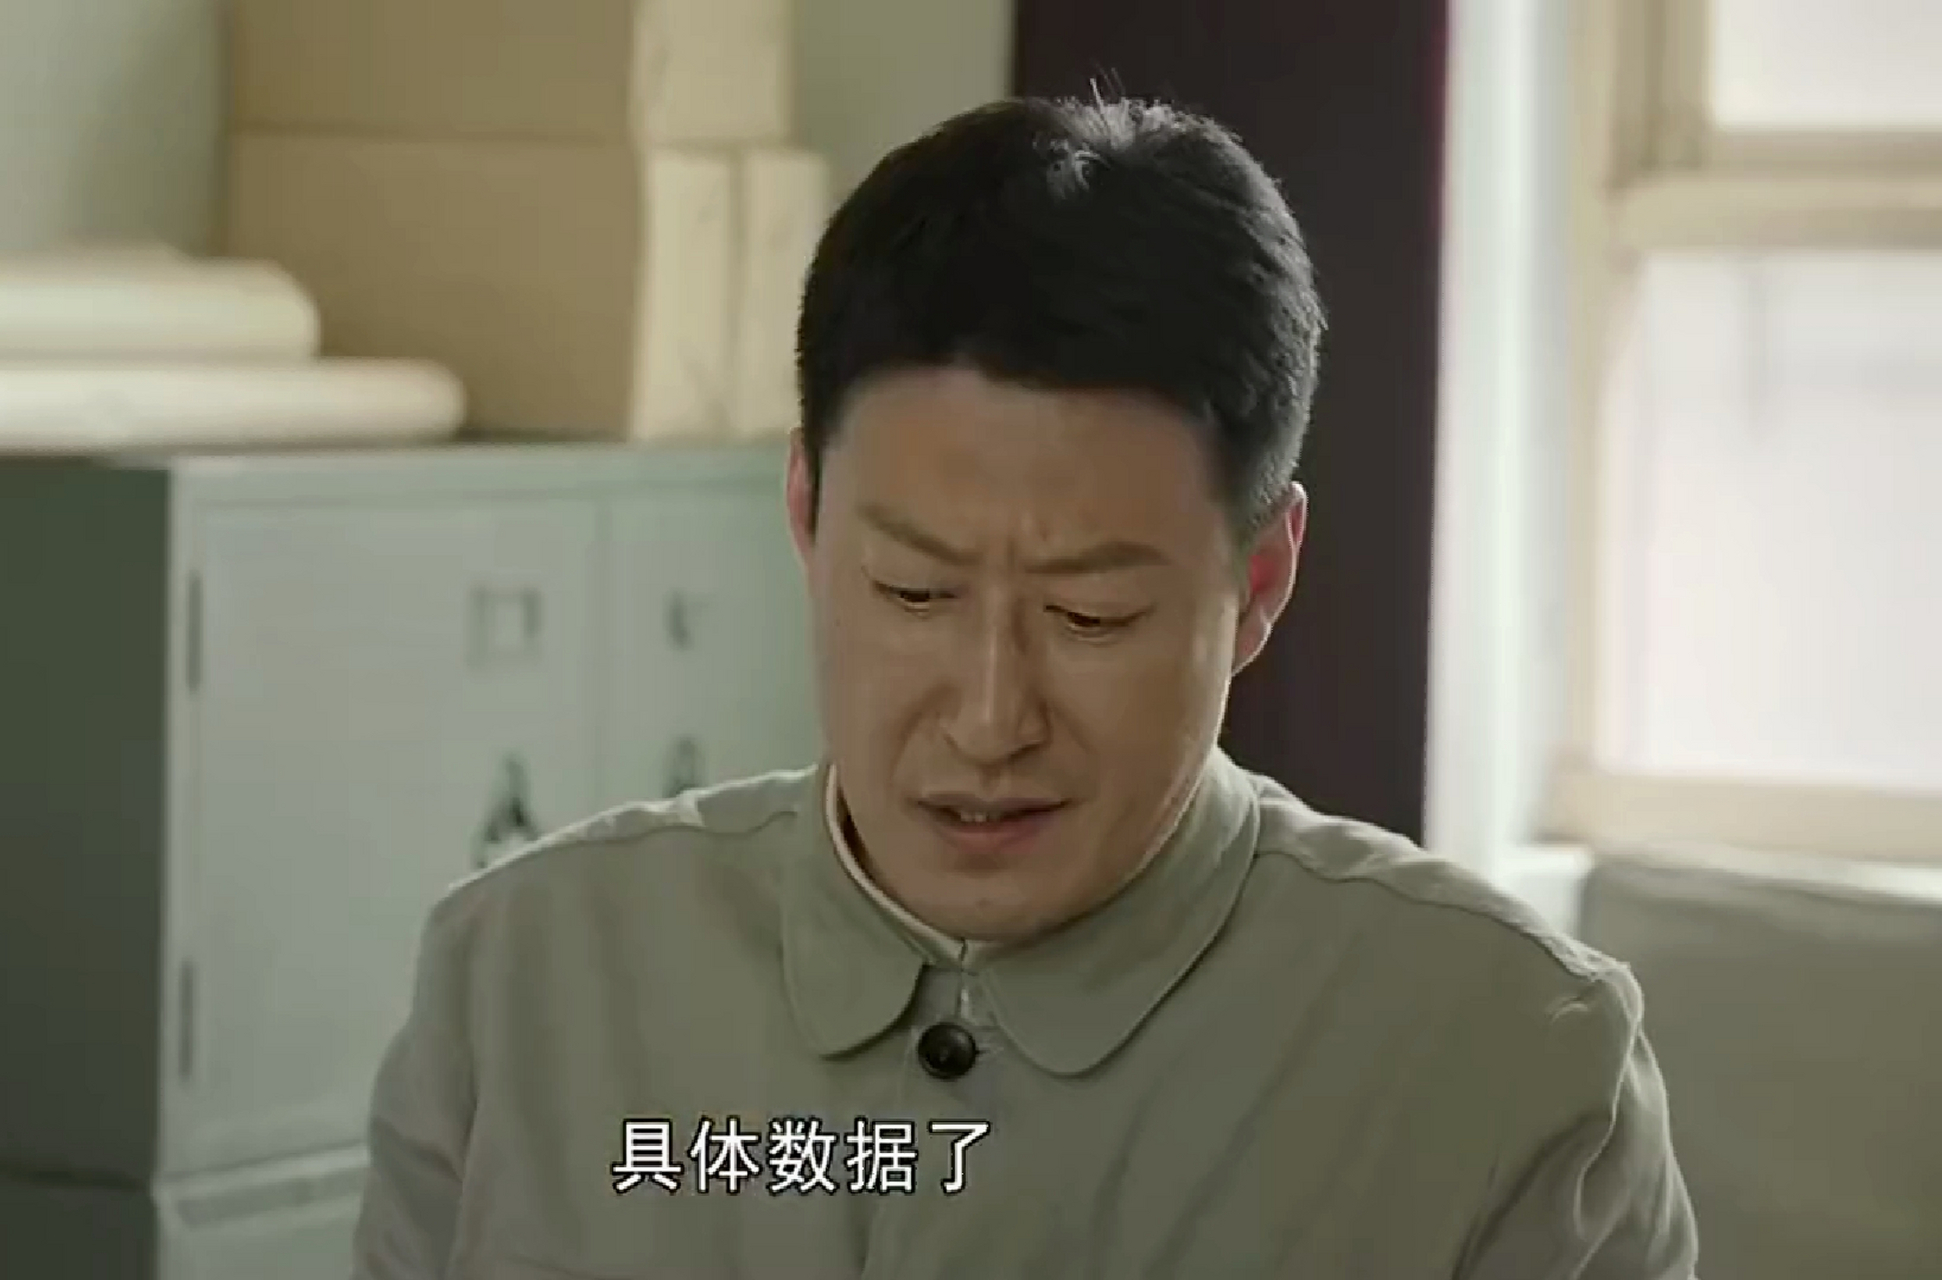 《红旗渠》饰演吴念祖的演员,演技的确一言难尽,不过,牺牲的时候,还是